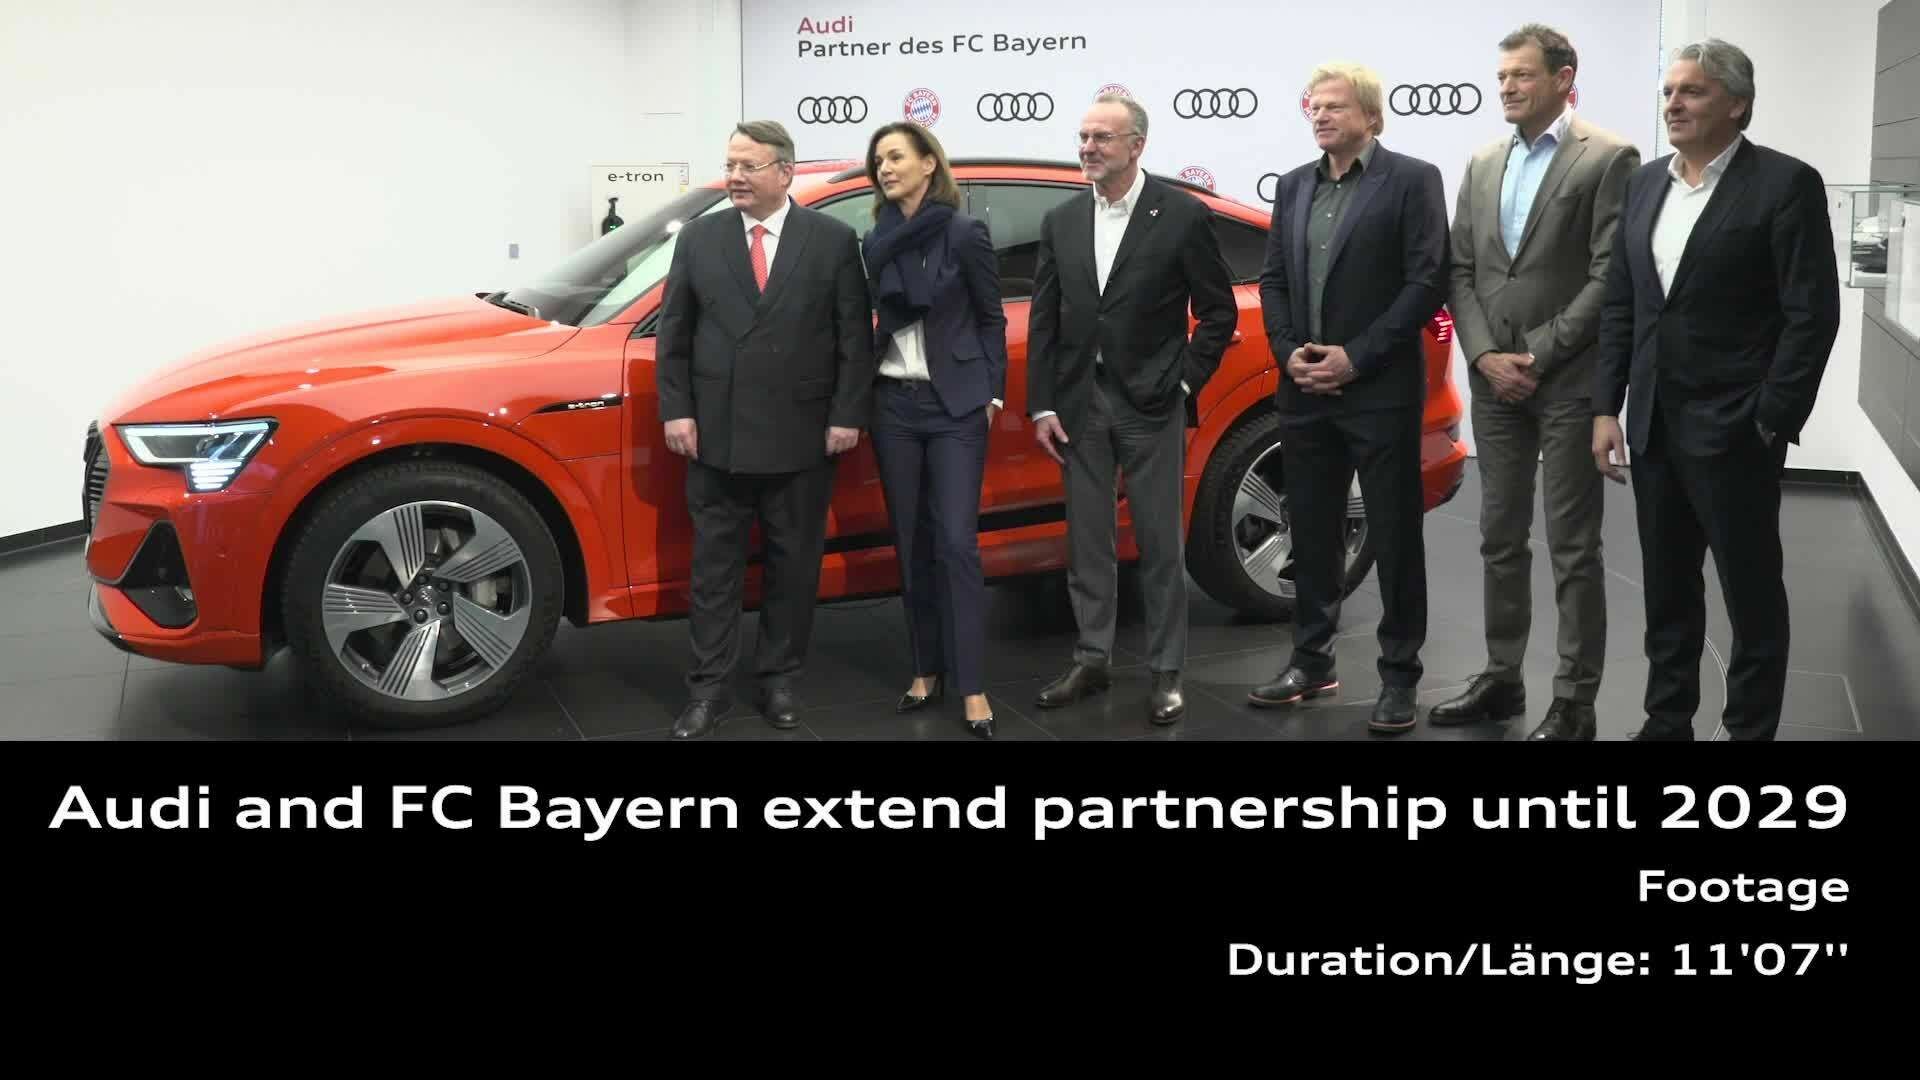 Verlängerte Partnerschaft mit dem FC Bayern bis 2029 (Footage)